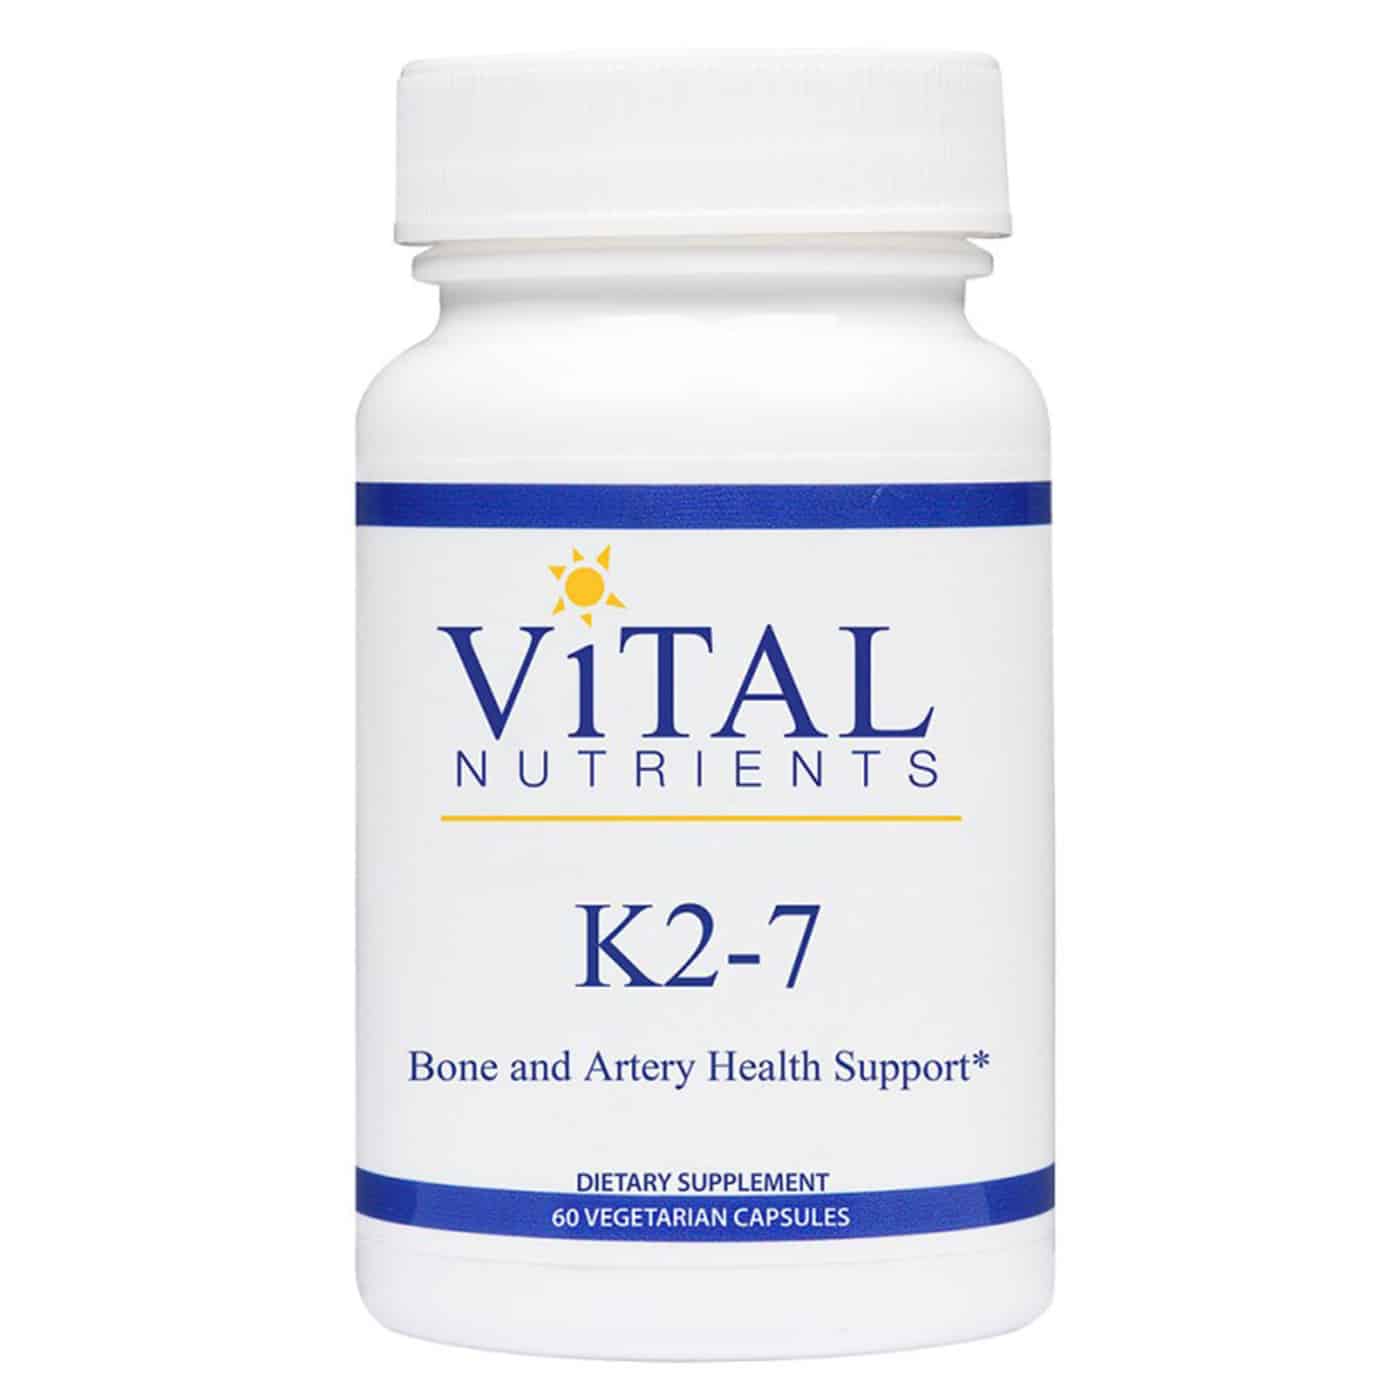 Vital Nutrients K2